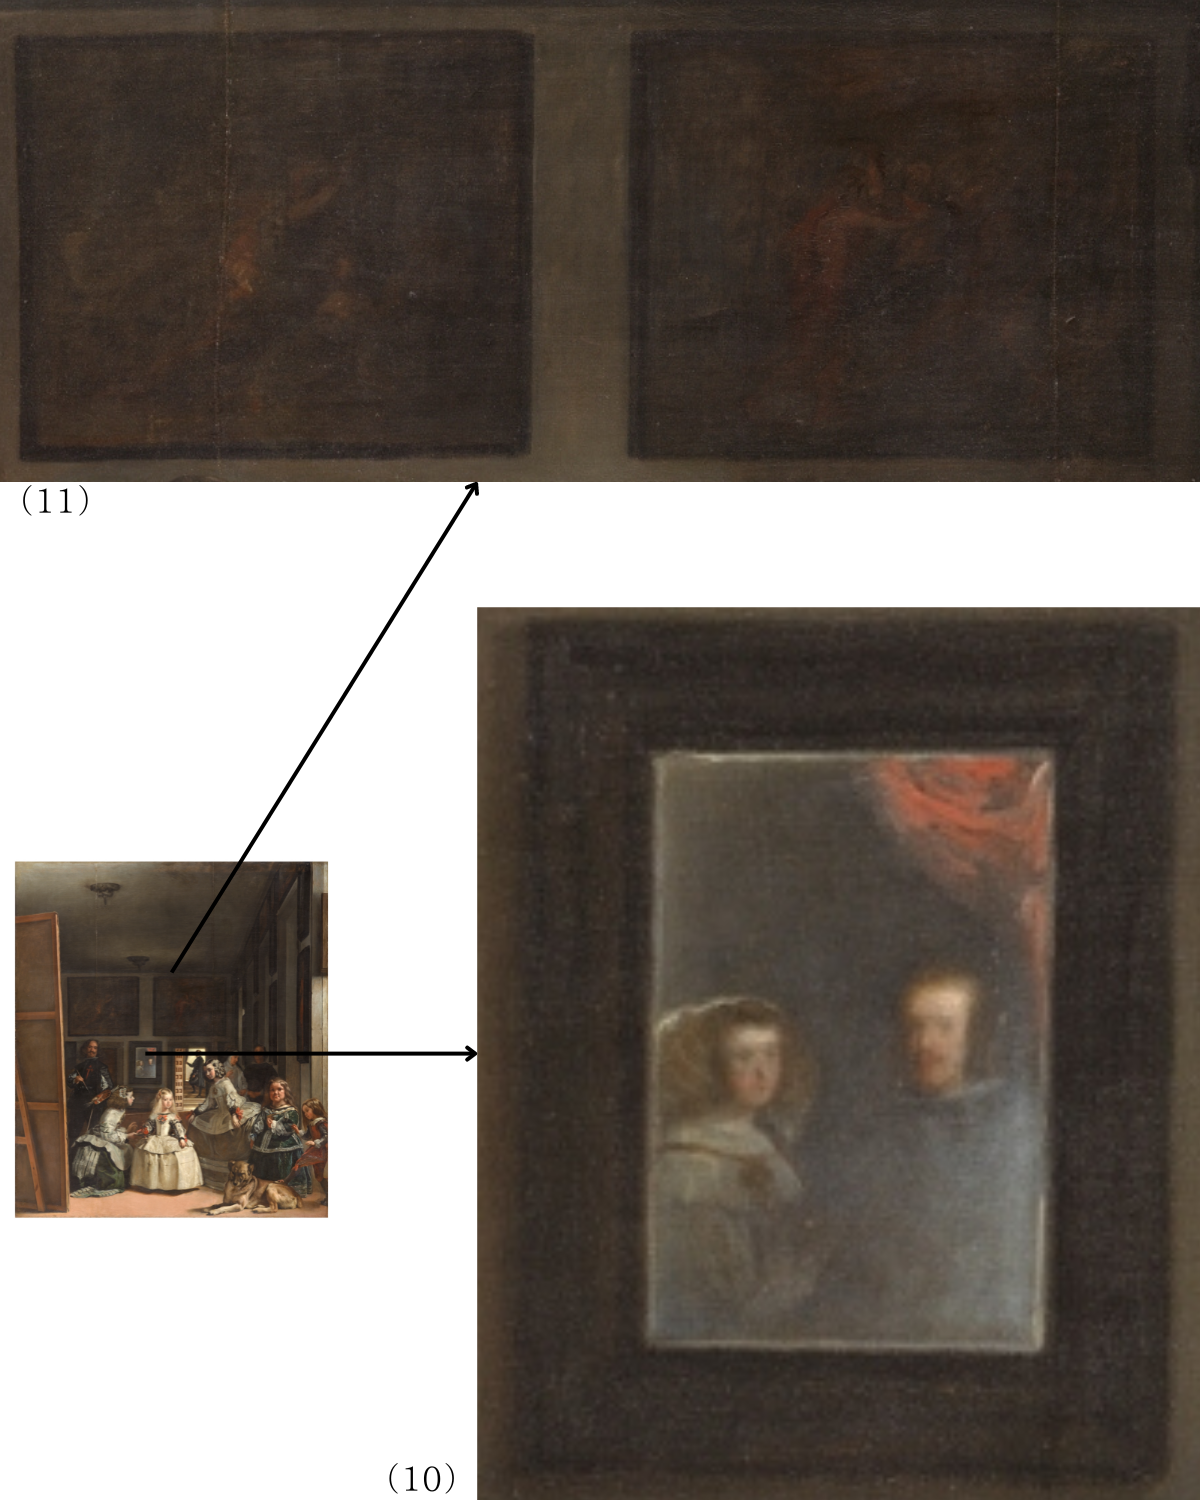 〈ラス・メニーナス（侍女たち）〉（10）国王フェリペ四世と王妃マリアナの姿が浮かぶ鏡、（11）影に包まれた二枚の絵画